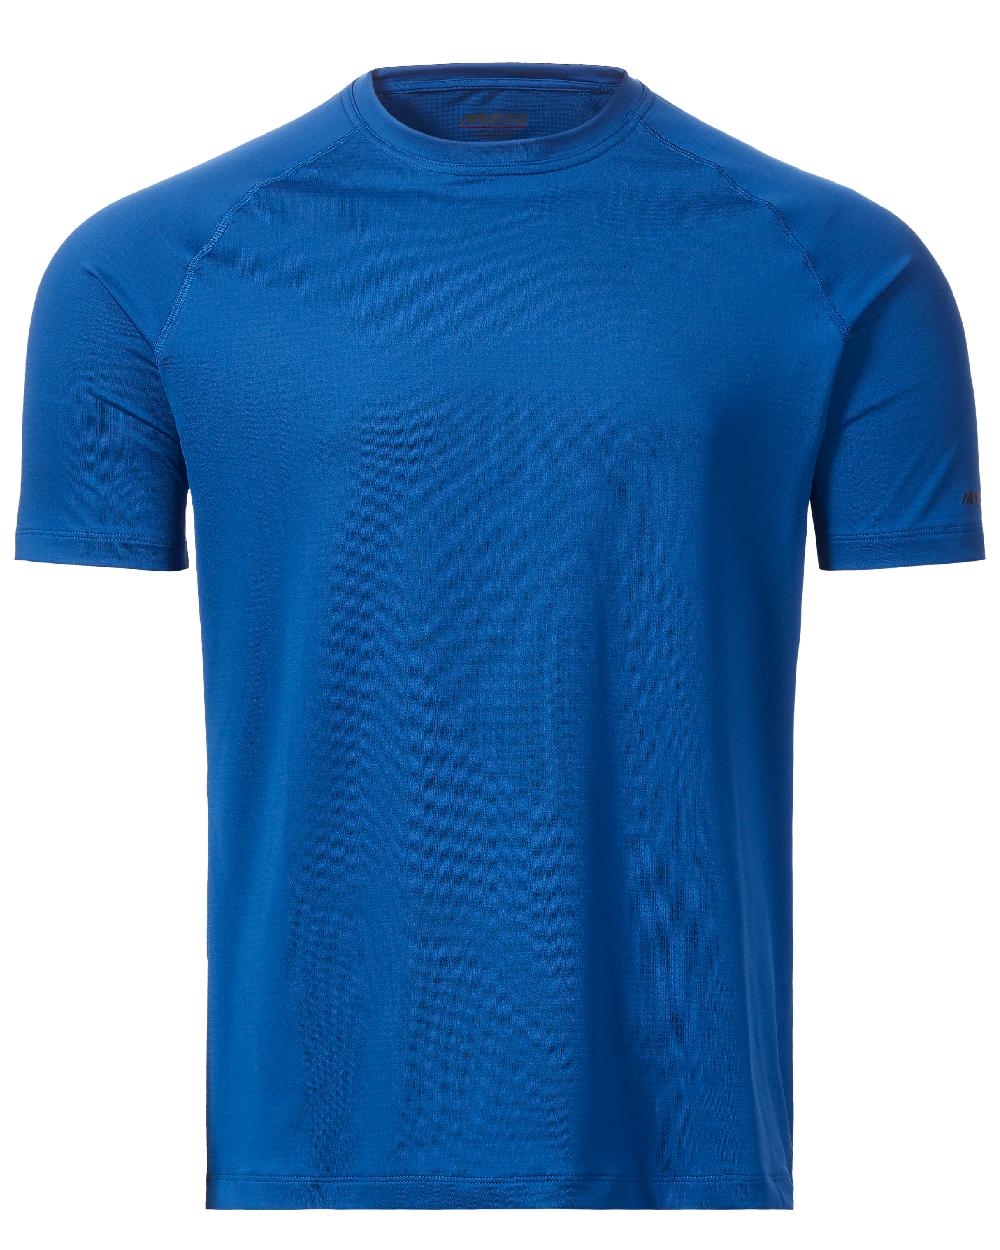 Racer Blue coloured Musto Mens Sunblock Short Sleeve T-Shirt on White background 